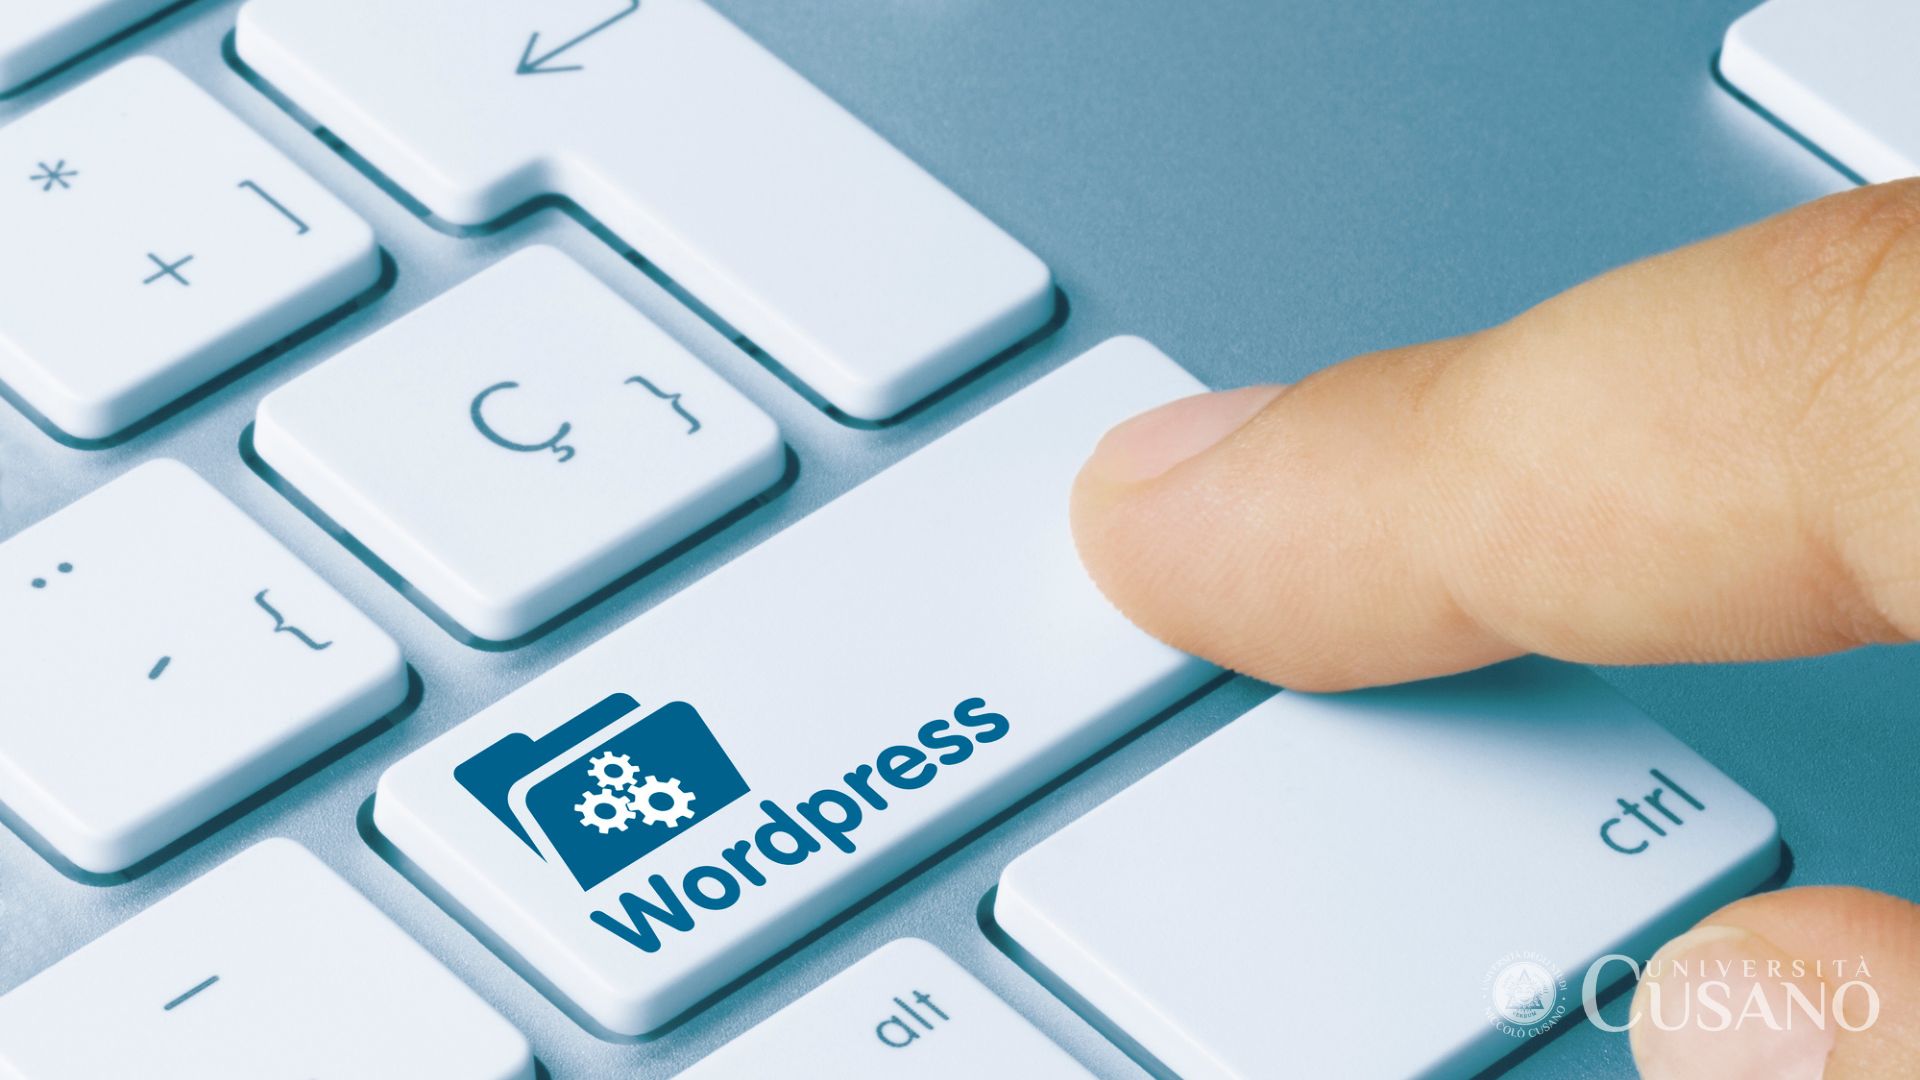 Come usare WordPress: la guida pratica